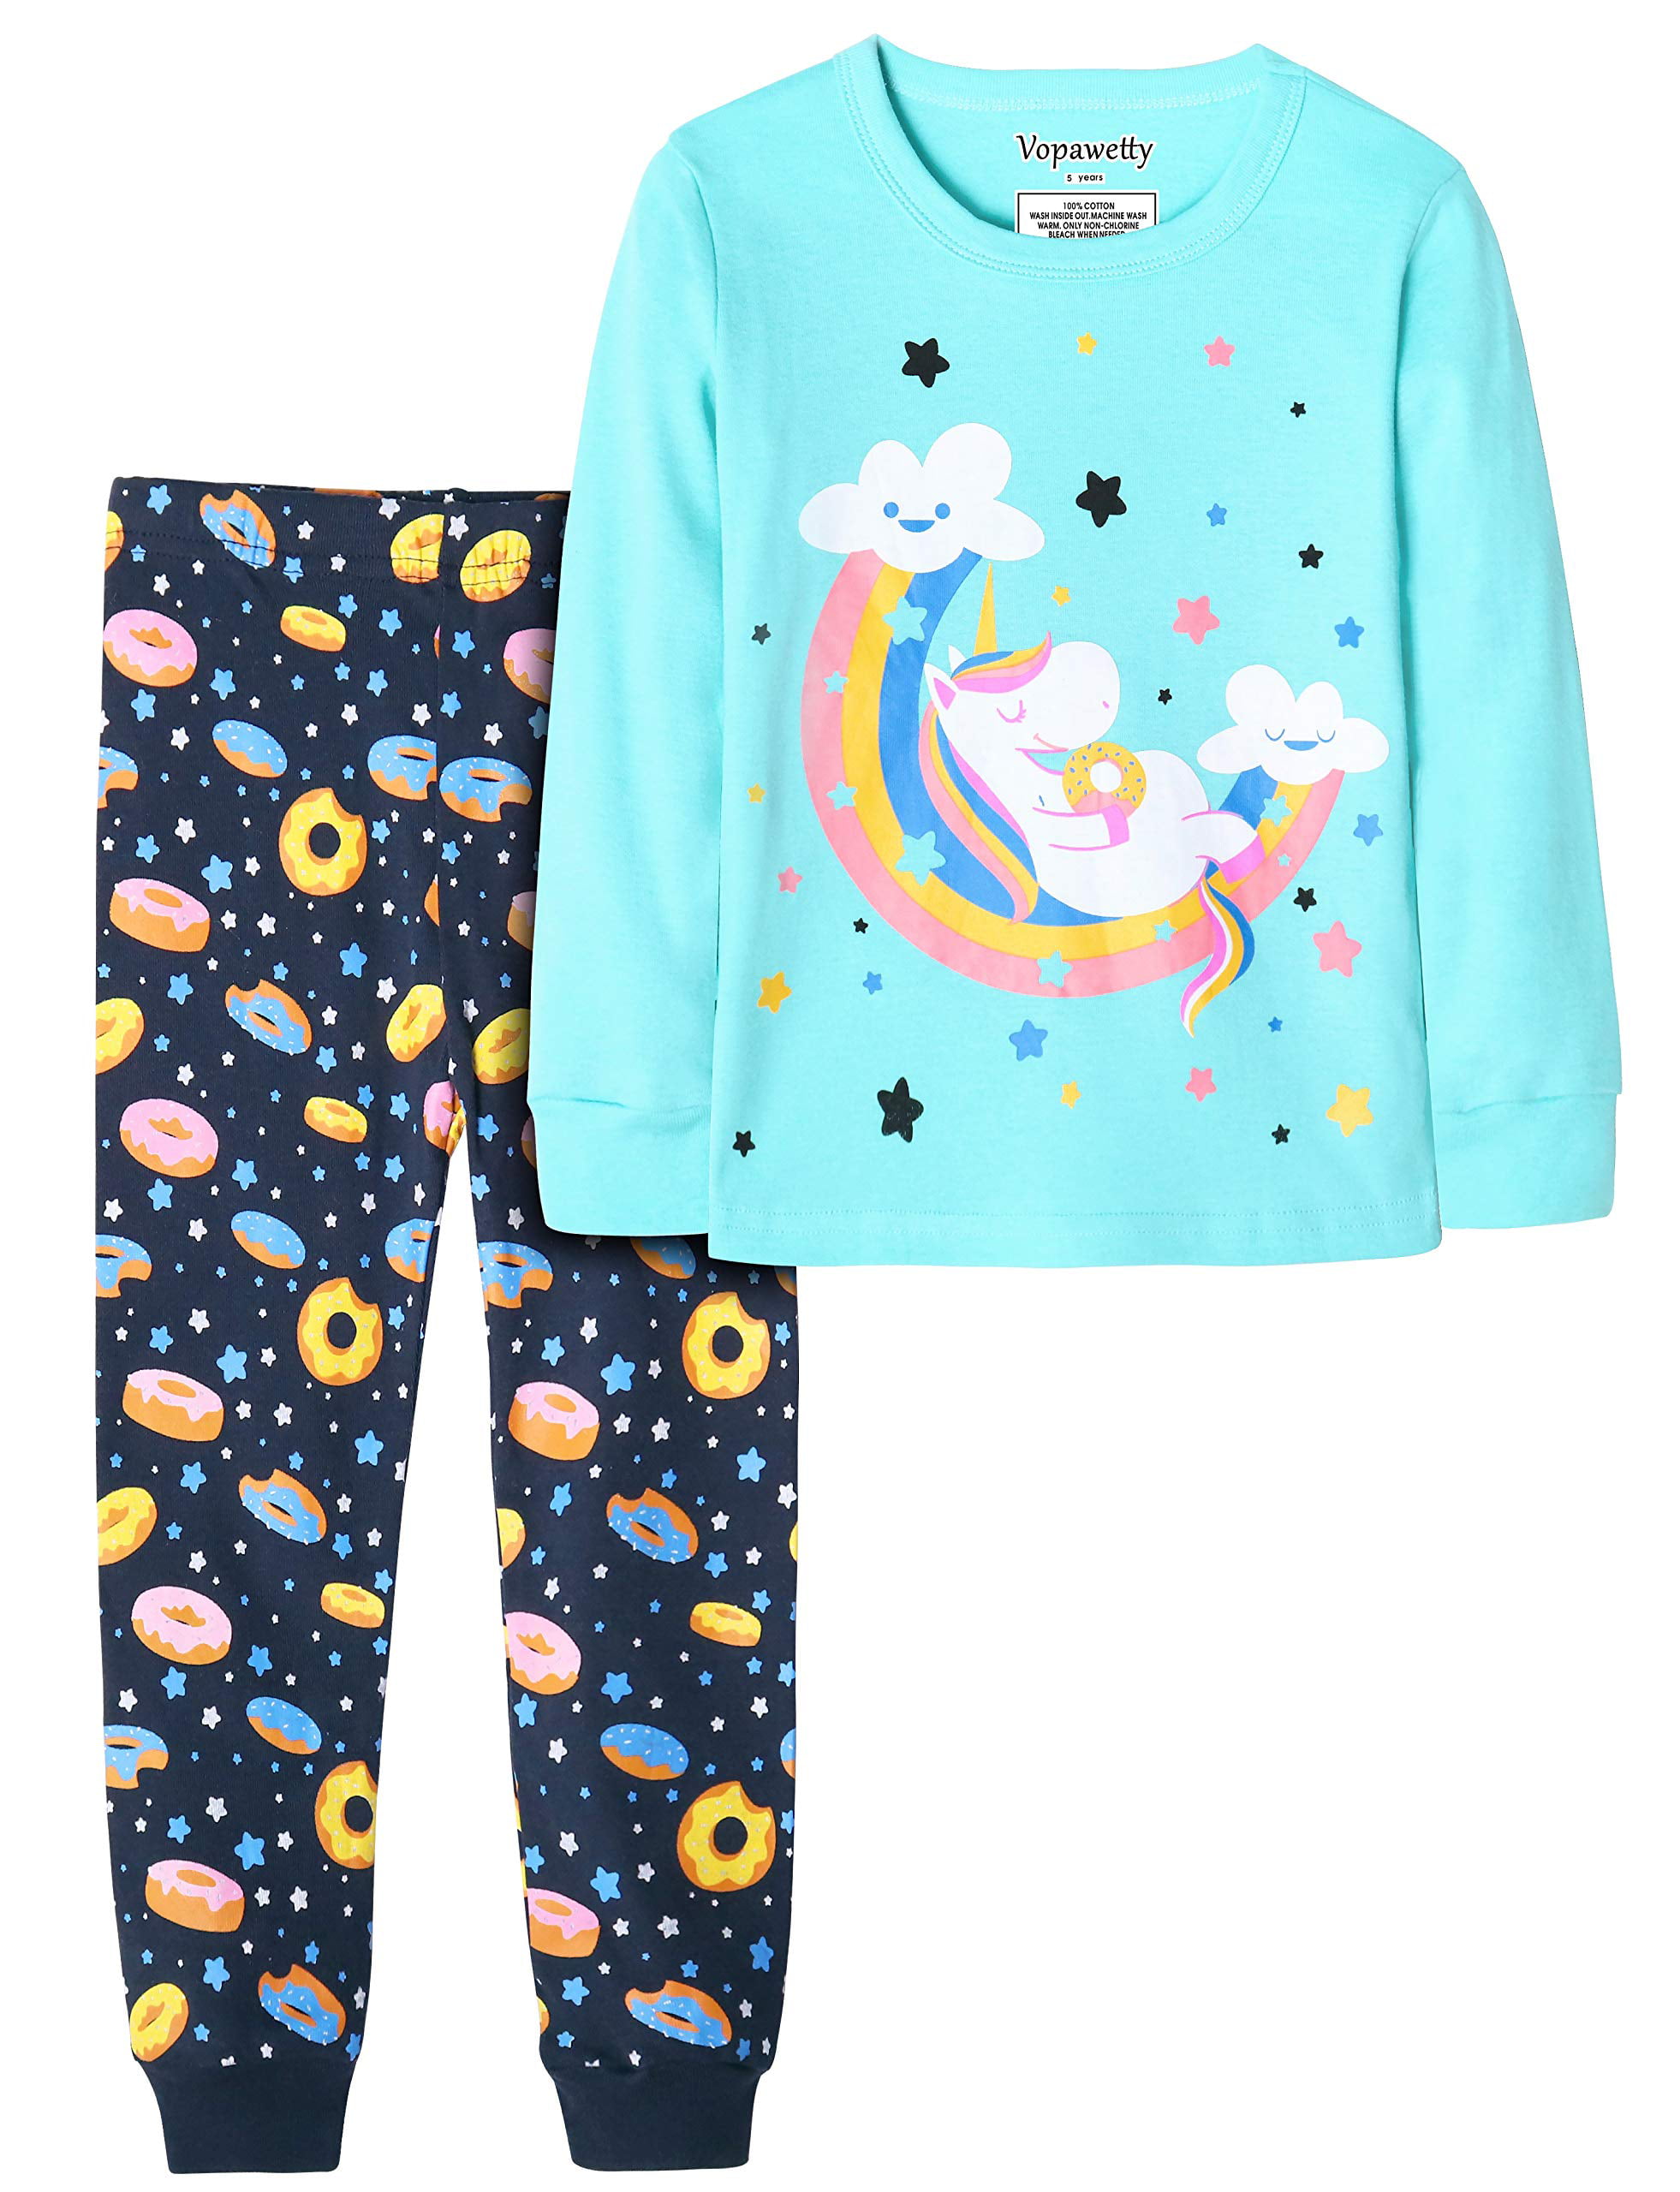 Vopawetty Girls Cotton Summer Pajama Set Sleepwear